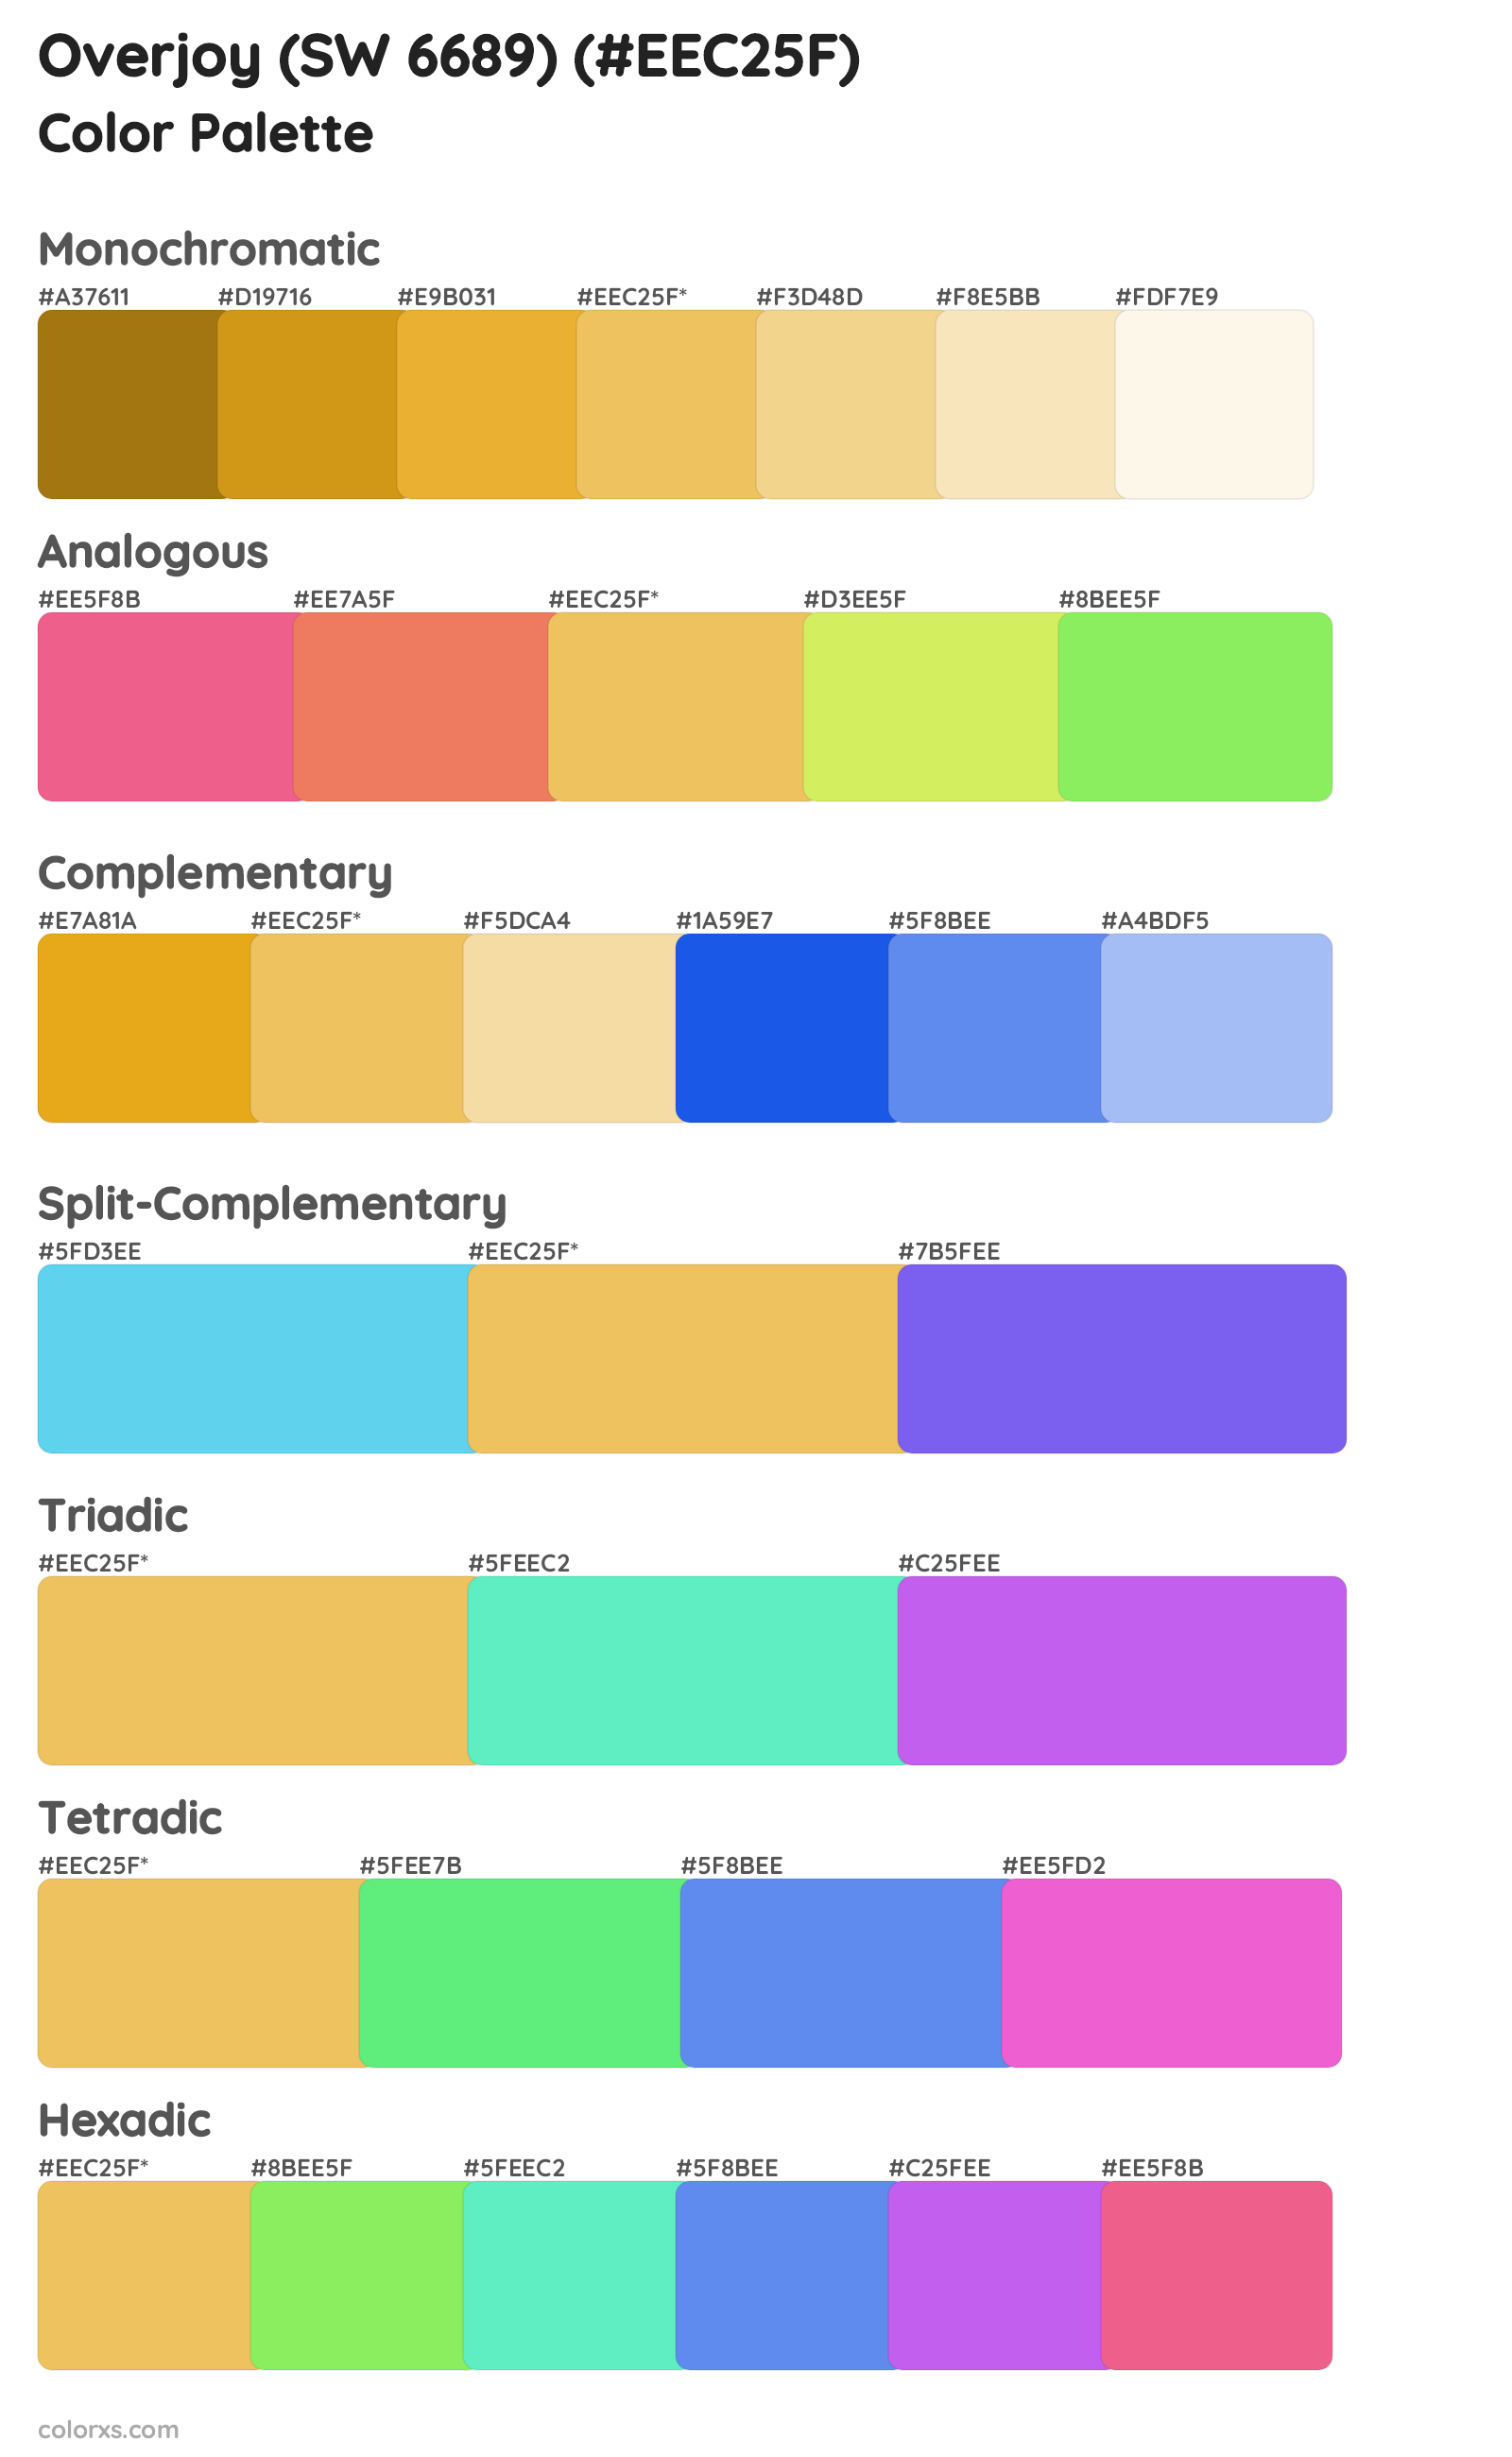 Overjoy (SW 6689) Color Scheme Palettes